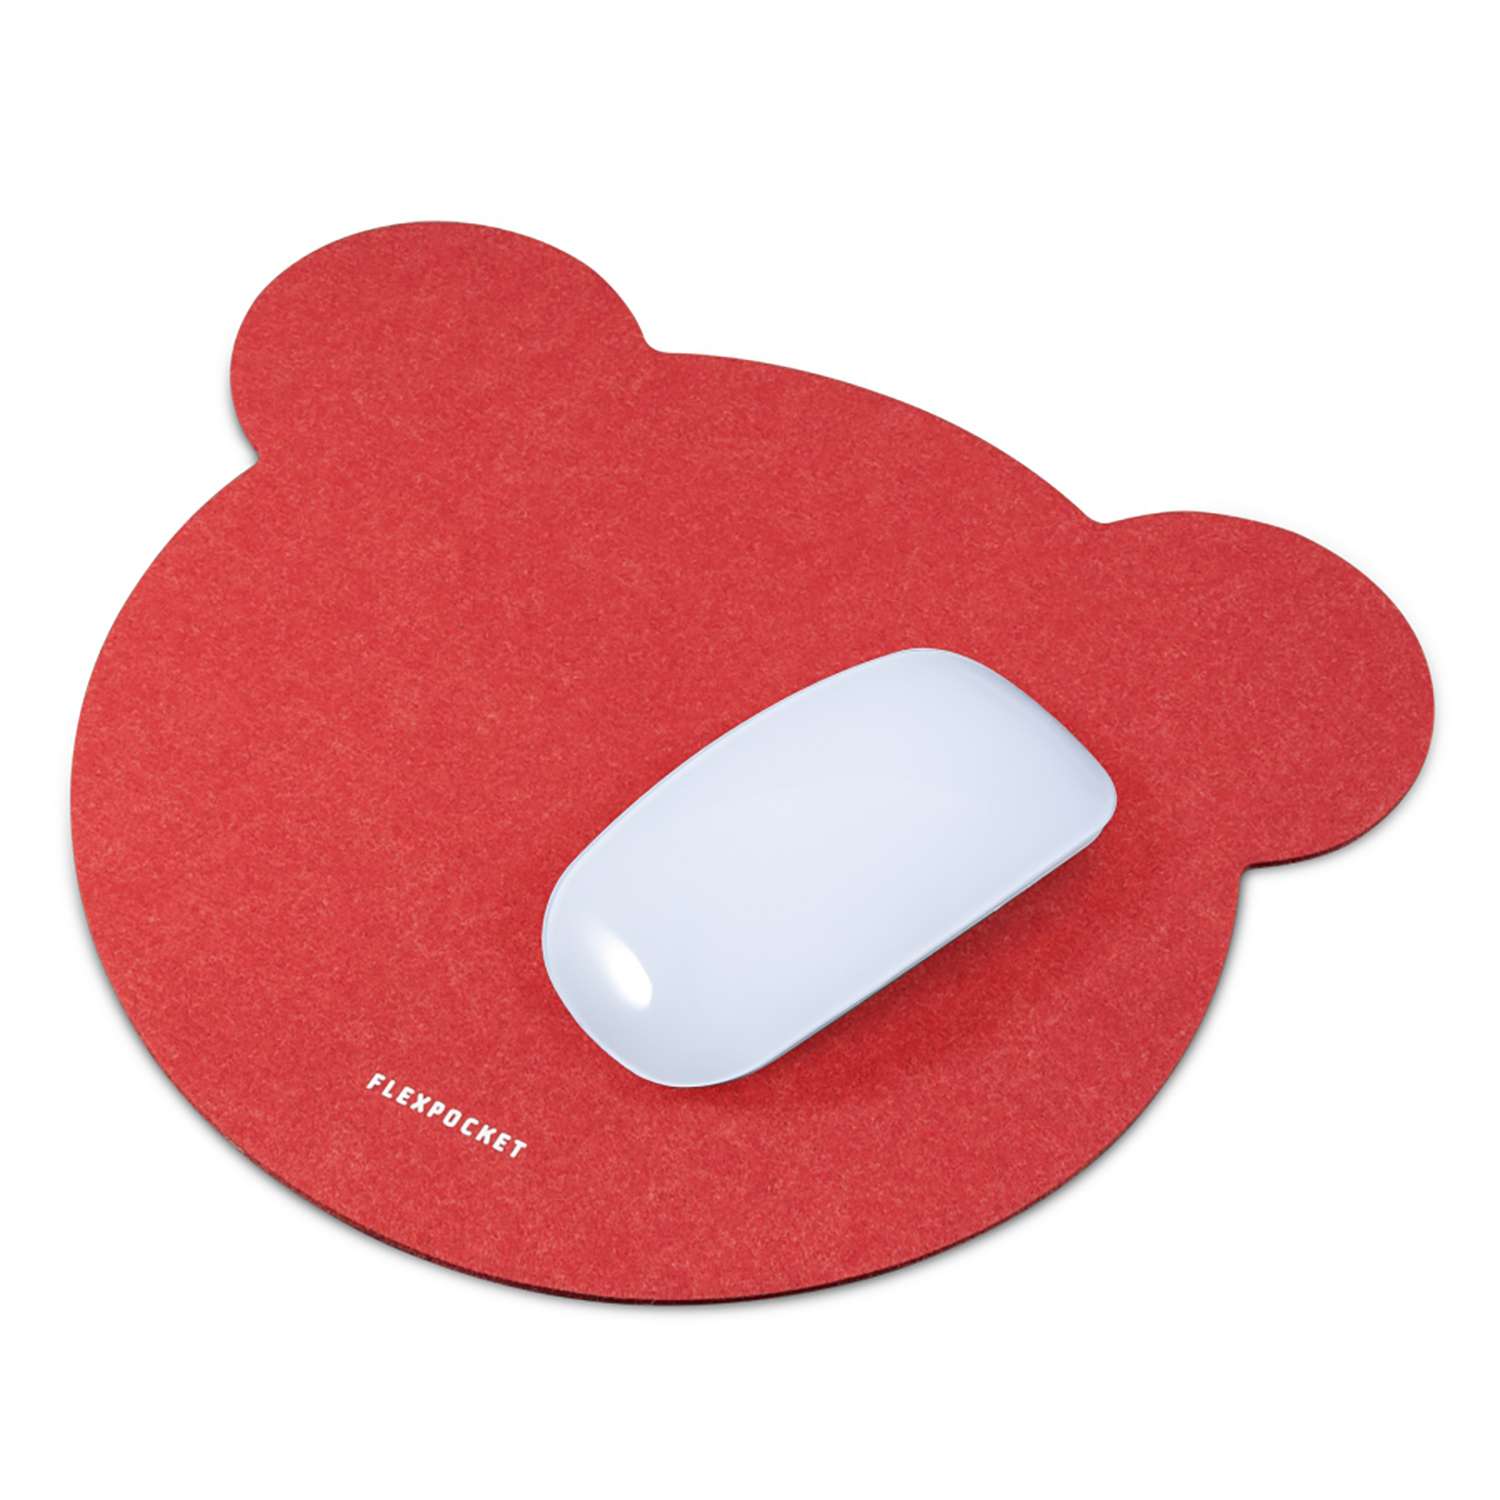 Настольный коврик Flexpocket для мыши 250х250мм красный - фото 2